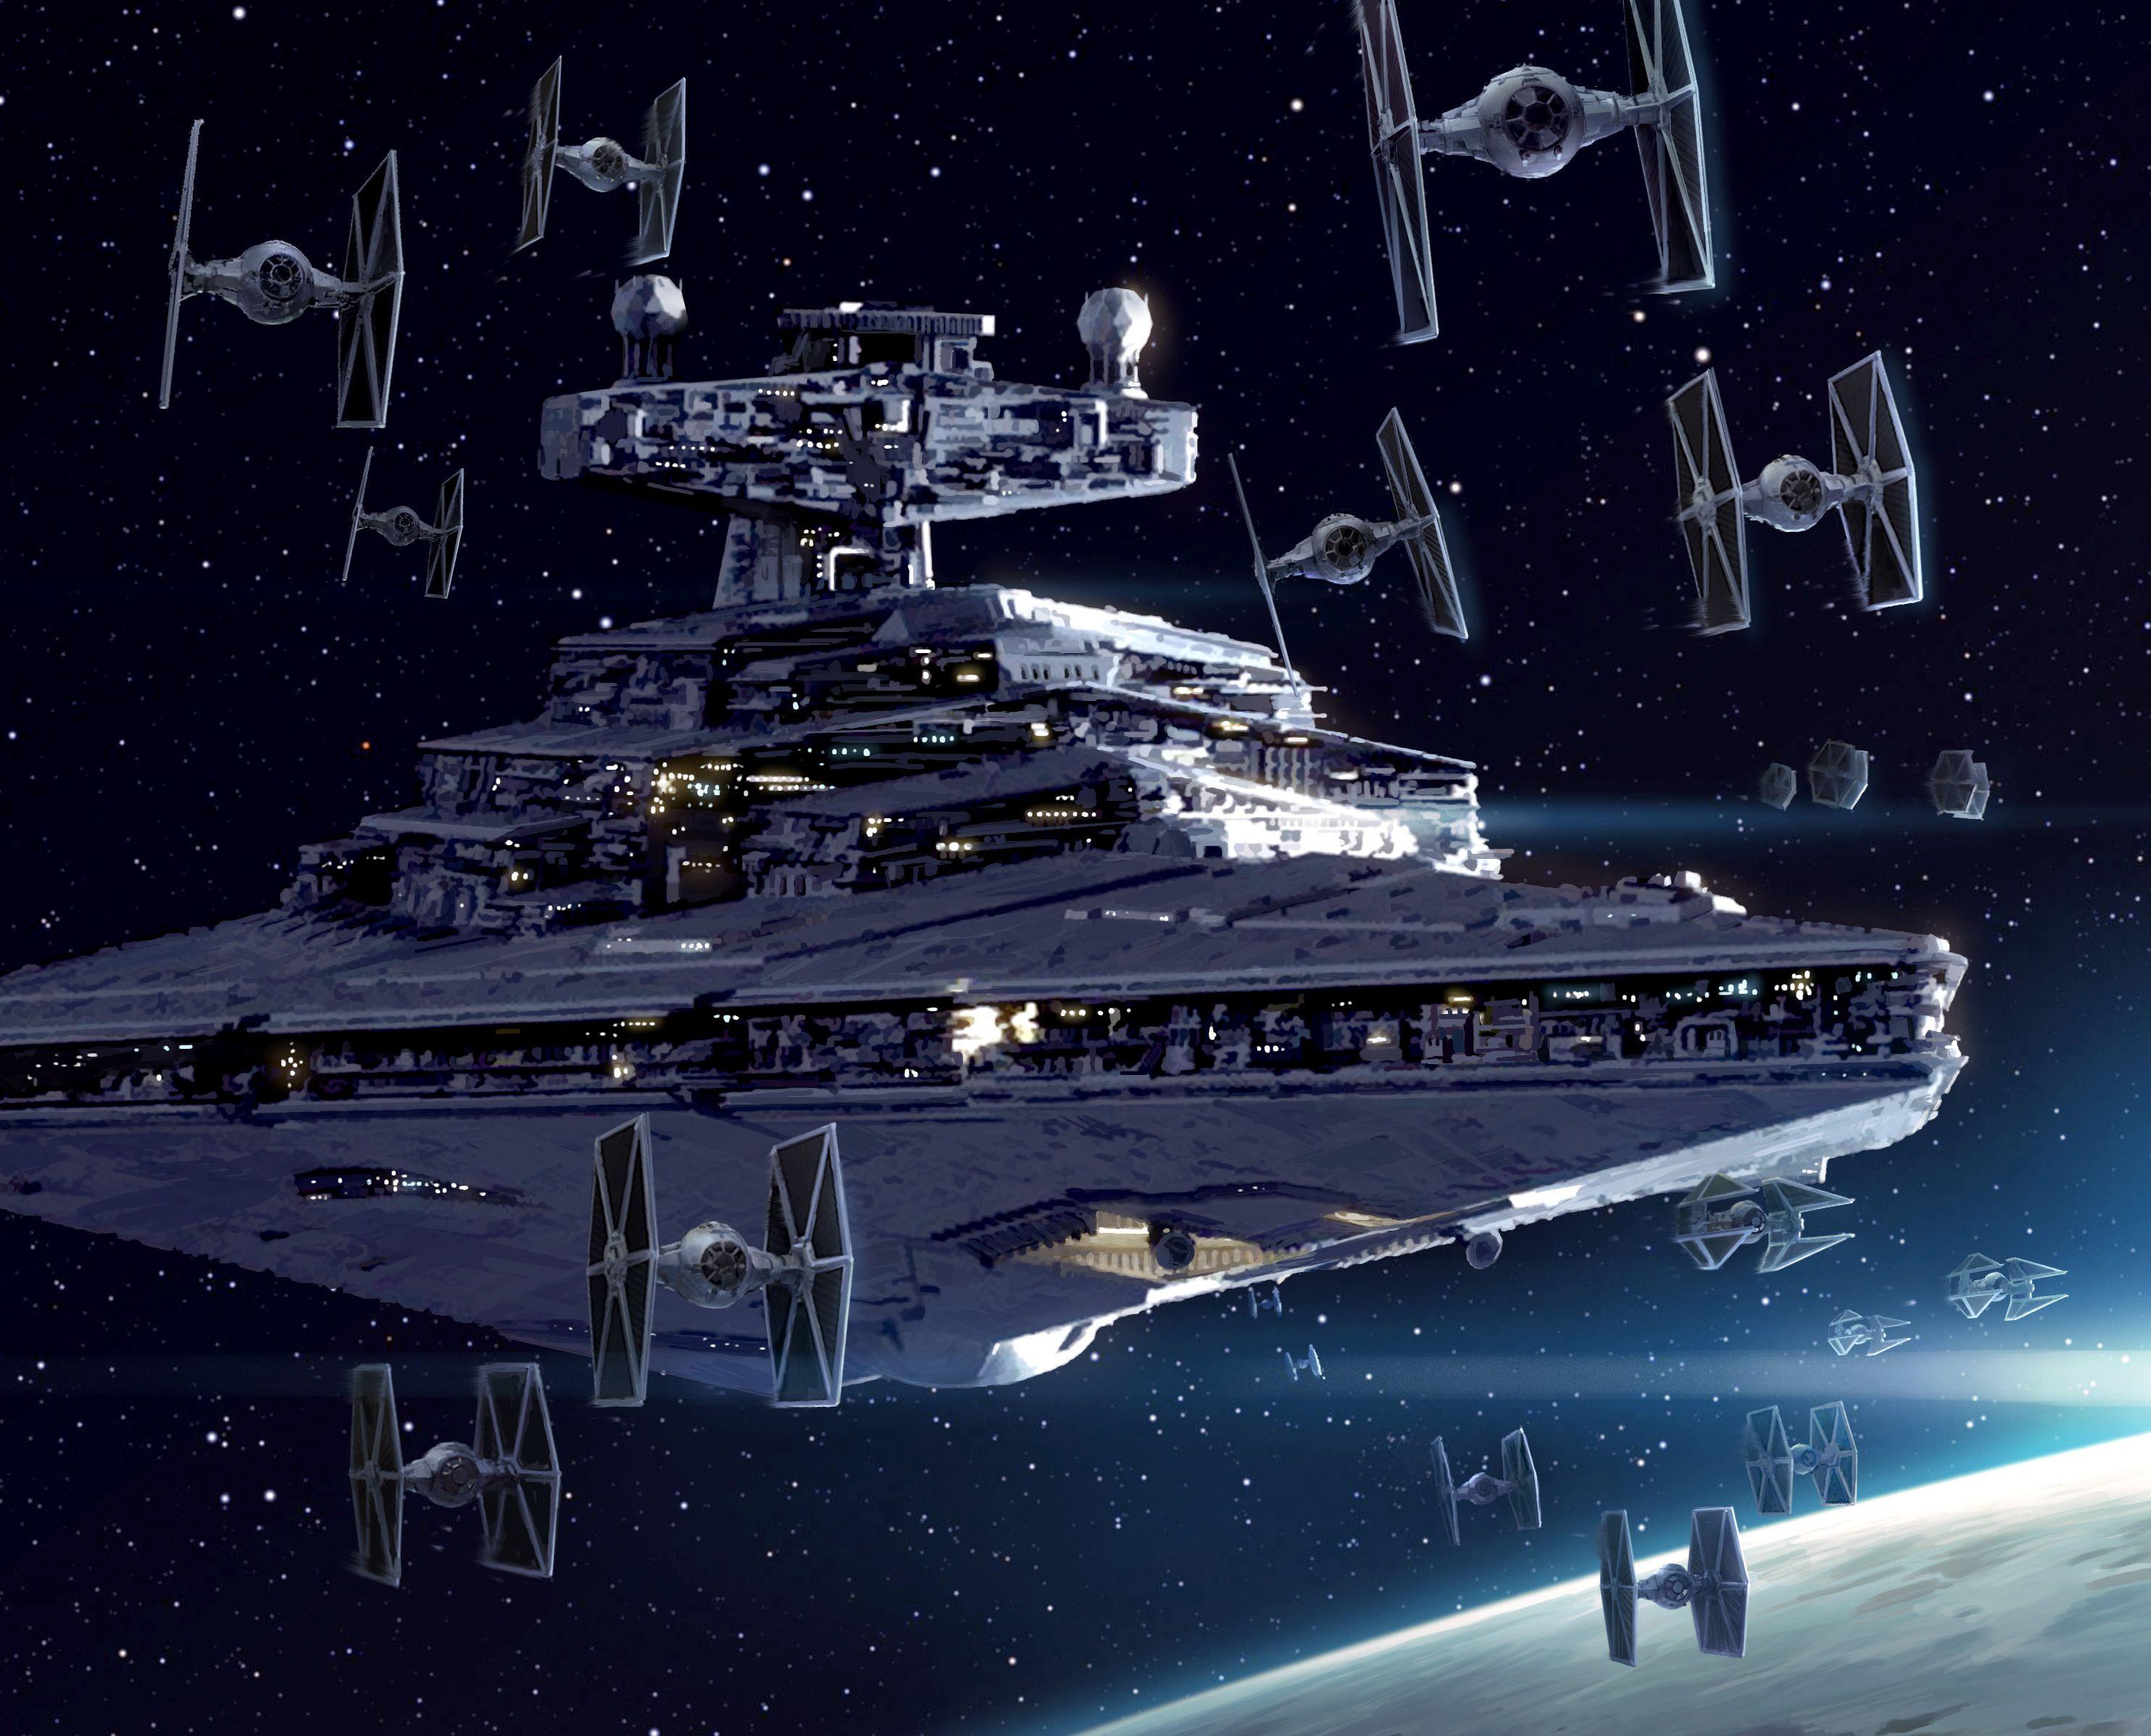 Star Wars: The Coolest Spaceships. Den of Geek